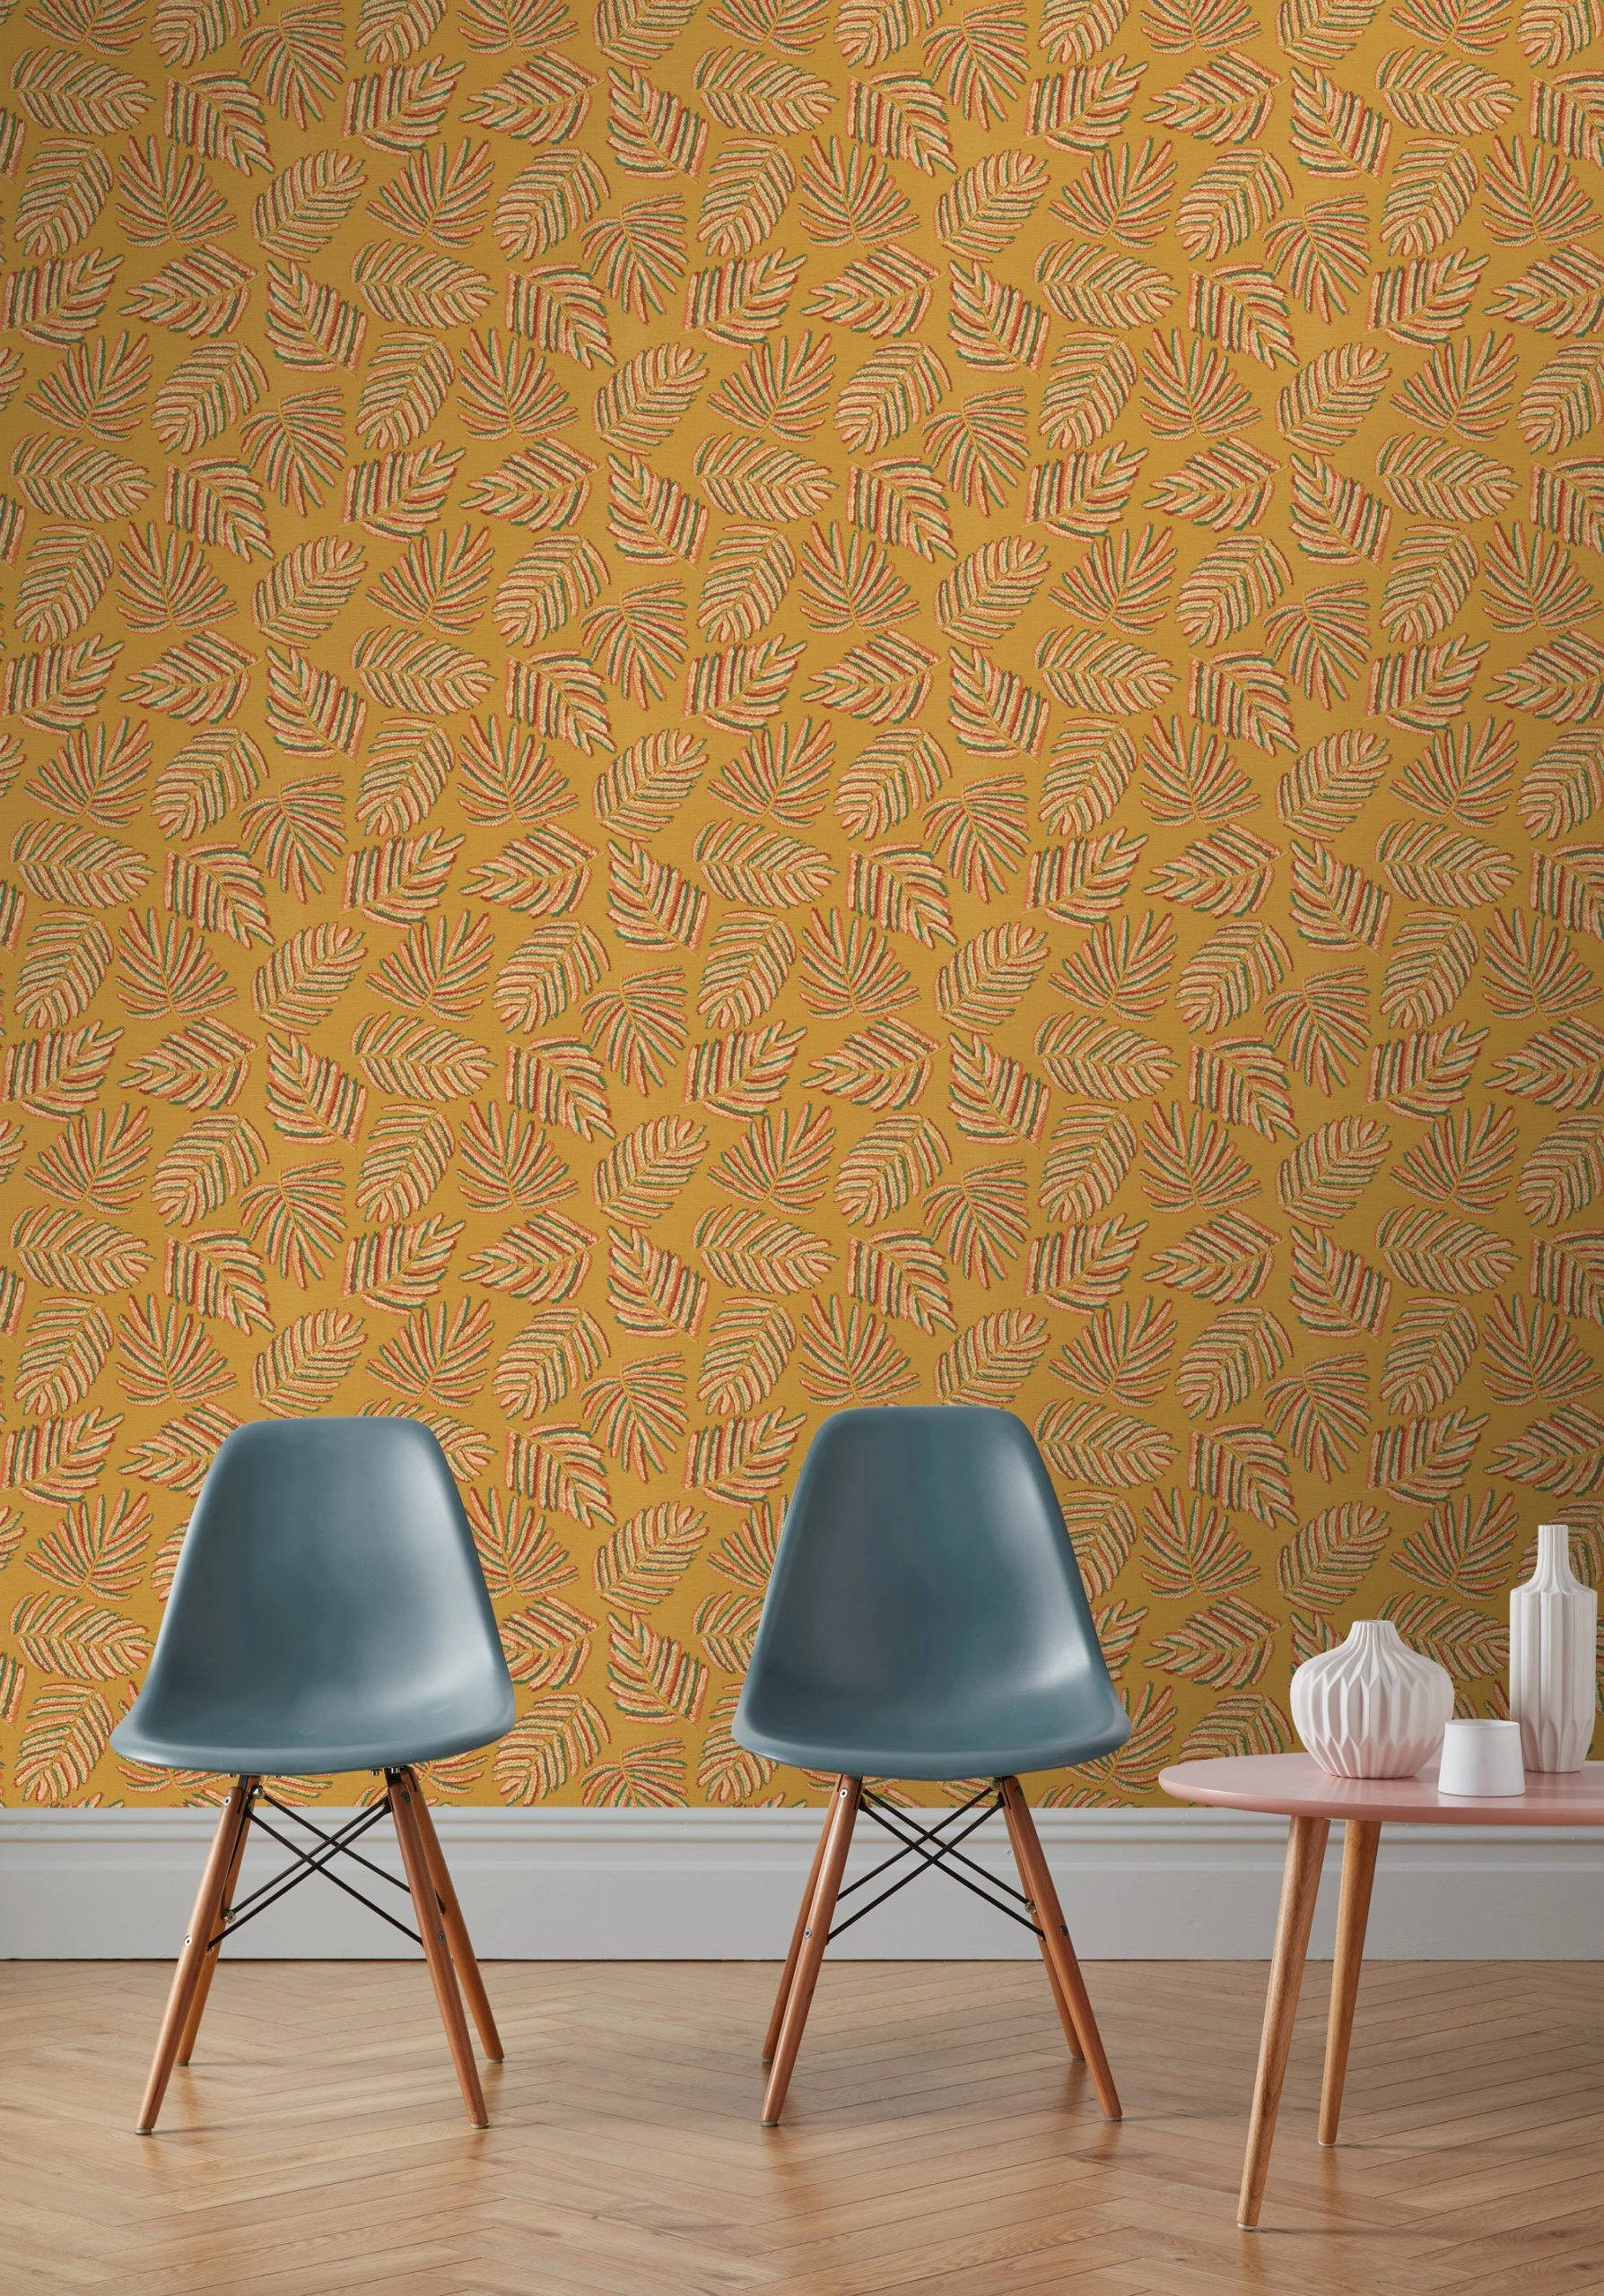 Sárga textilhatású alapon fenyőág mintás vlies dekor tapéta